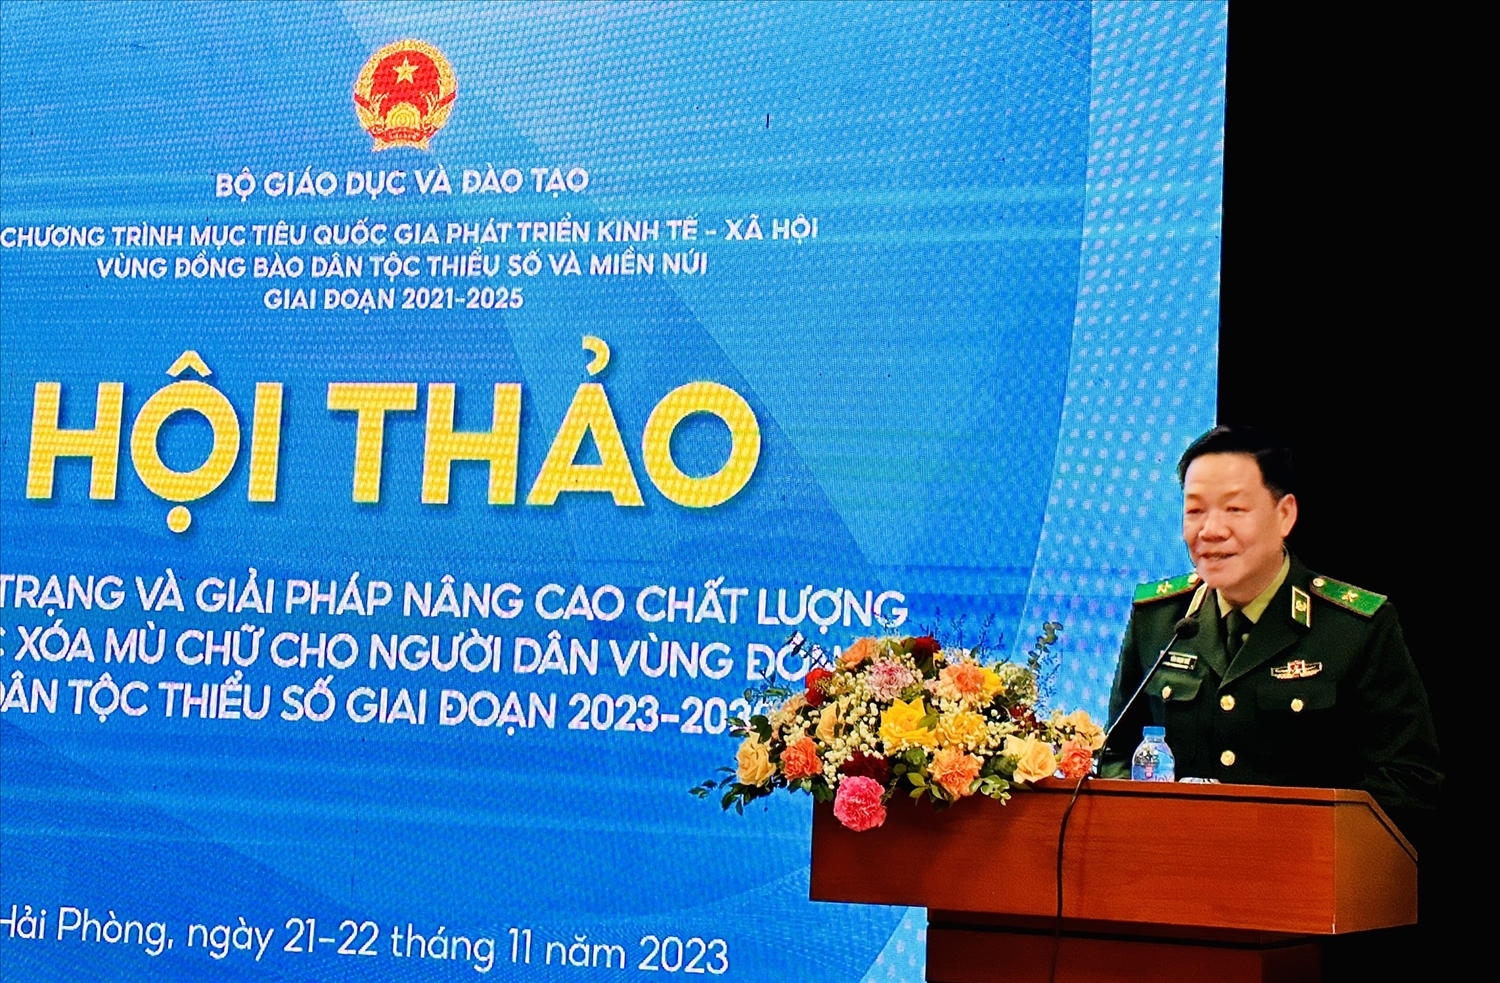 Thiếu tướng Văn Ngọc Quế, Phó Chủ nhiệm Chính trị Bộ đội biên phòng phát biểu tham luận tại Hội thảo